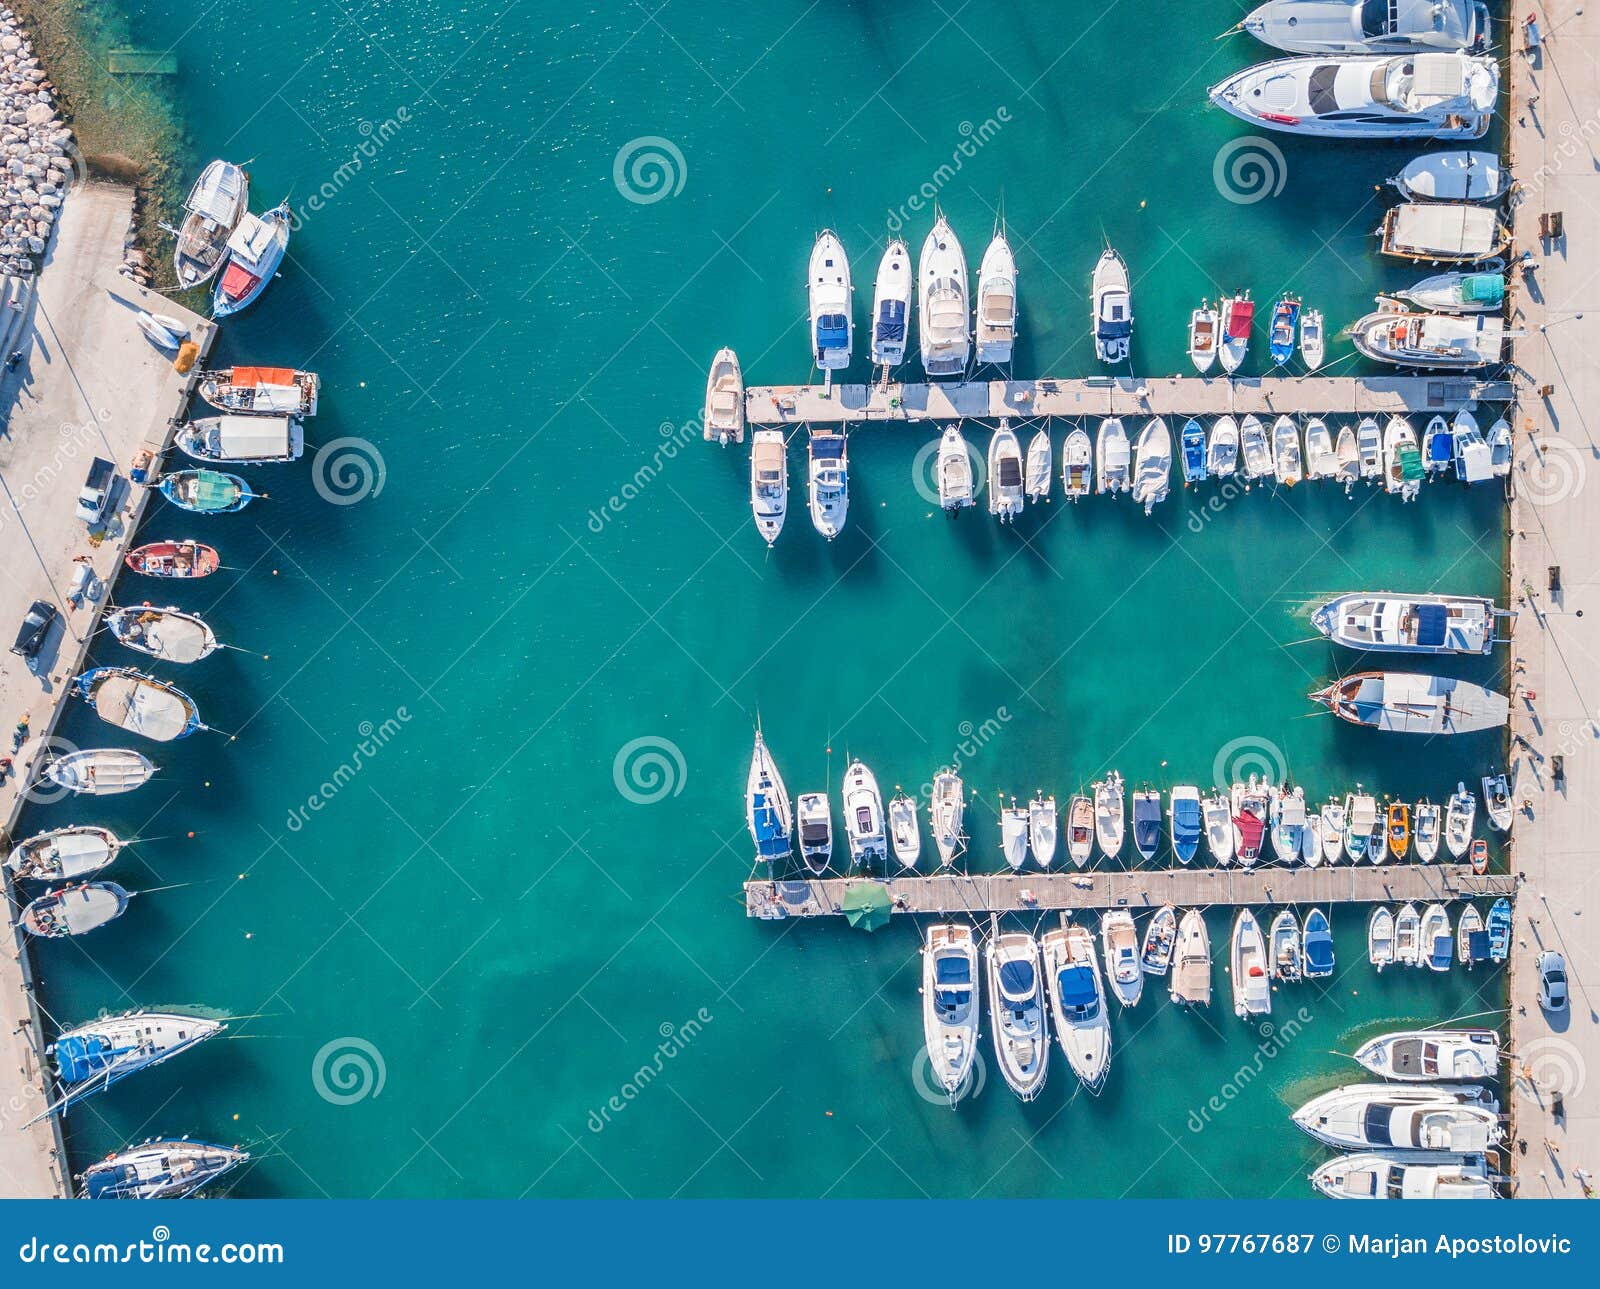 boats in the marina